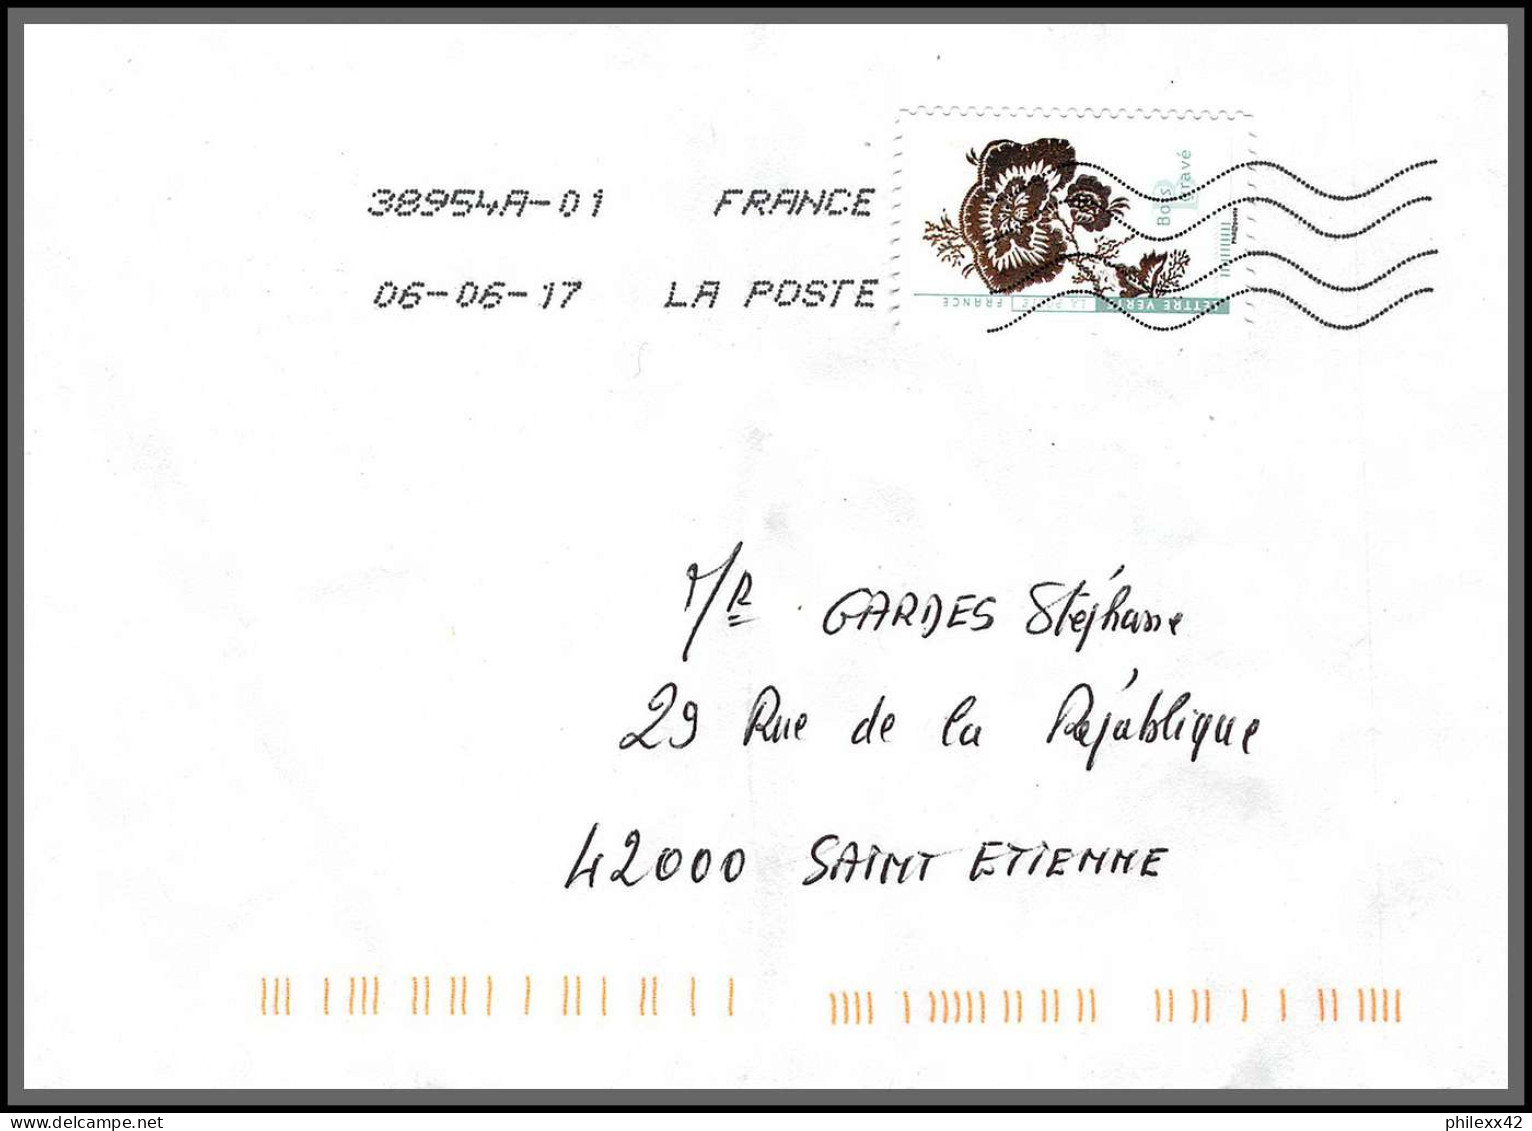 95902 - Lot De 15 Courriers Lettres Enveloppes De L'année 2018 Divers Affranchissements En EUROS - Briefe U. Dokumente